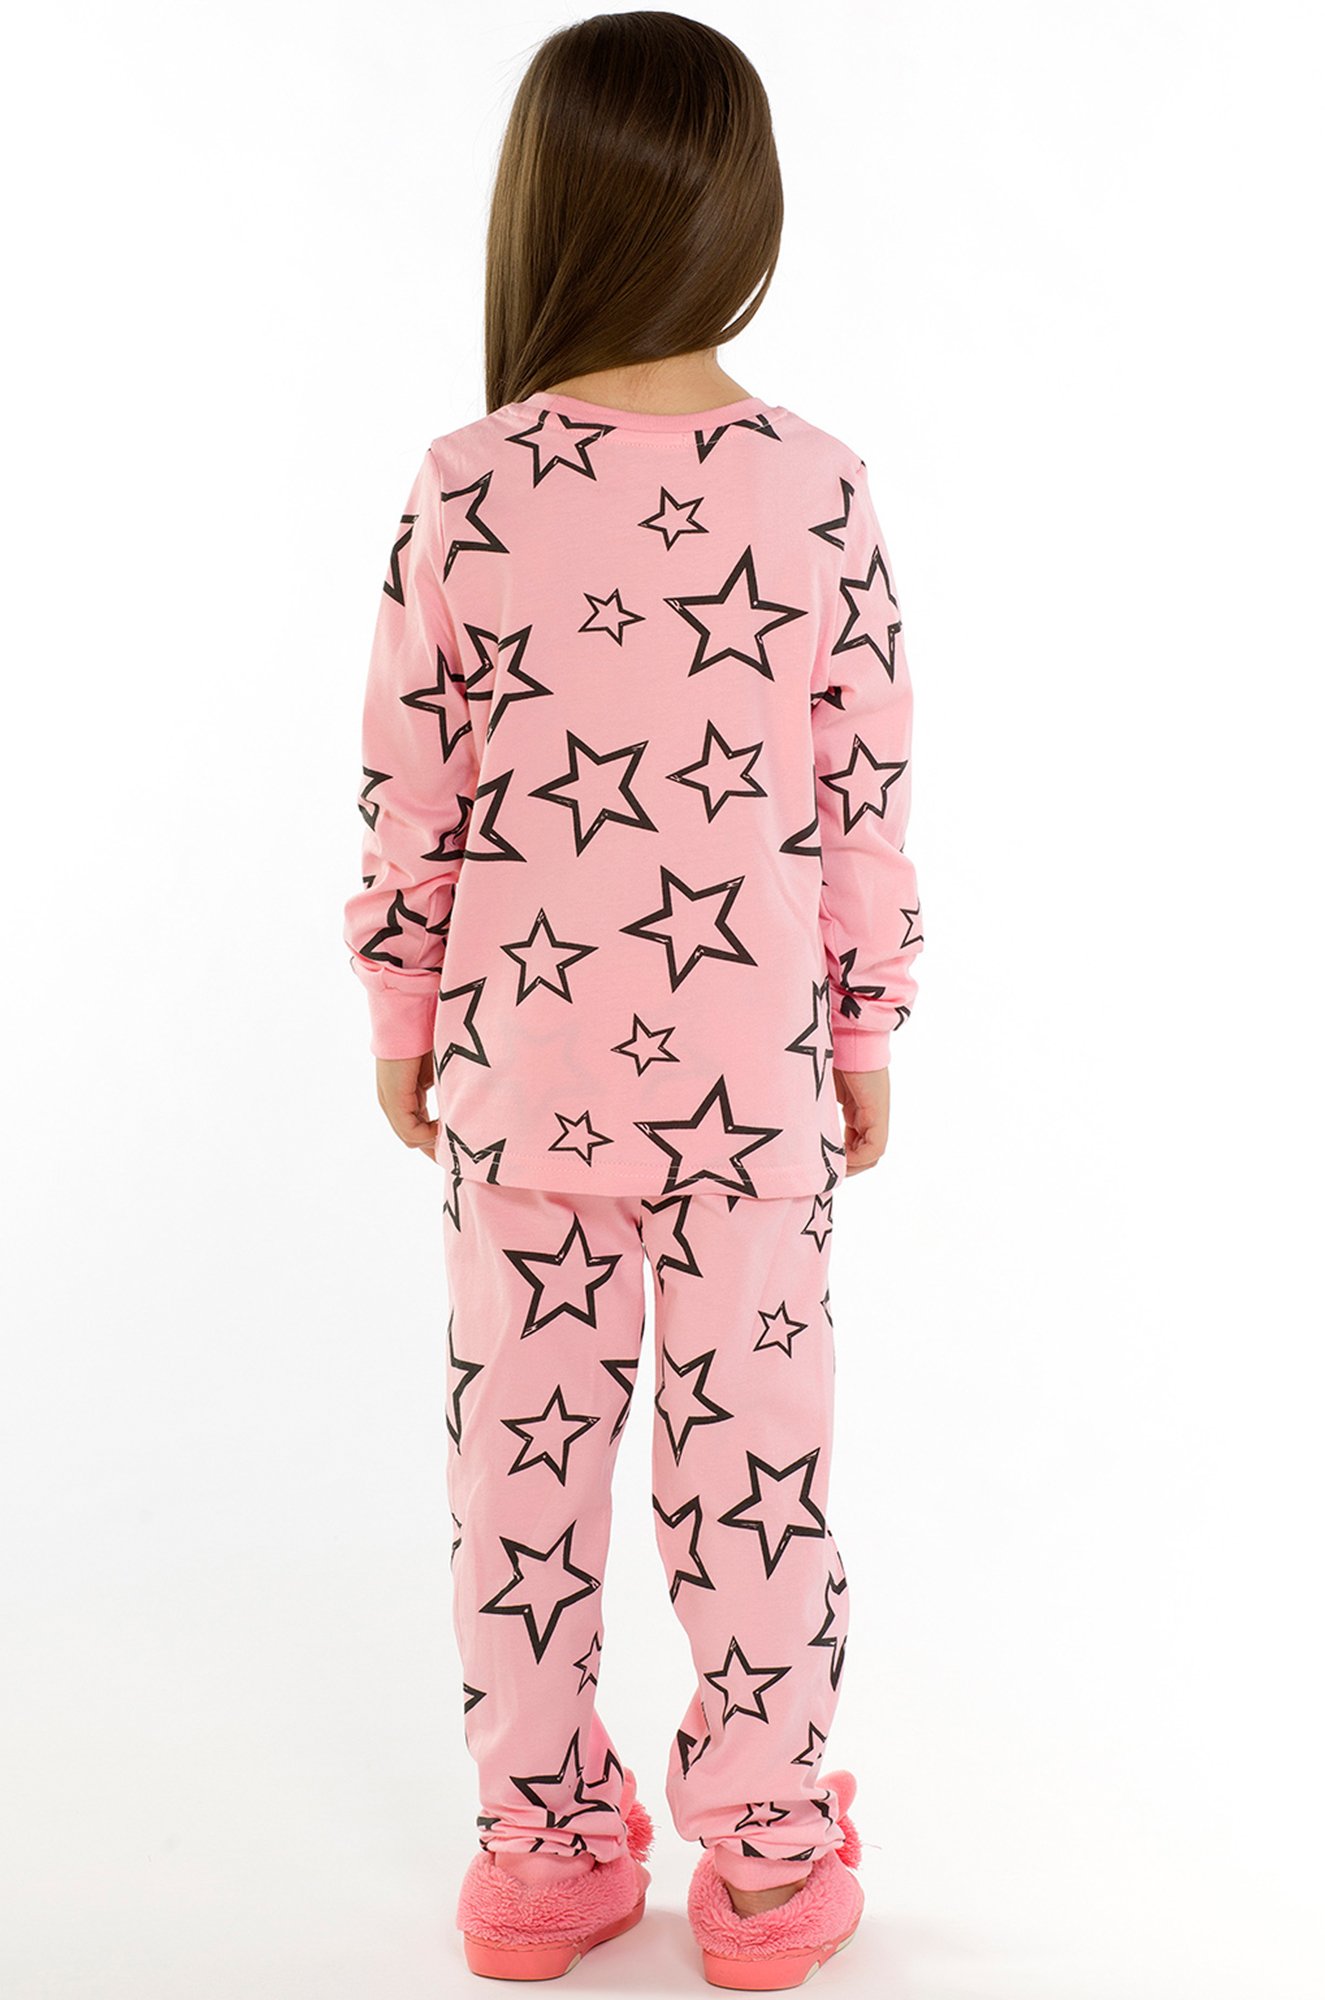 Пижама для девочки RoxyFoxy